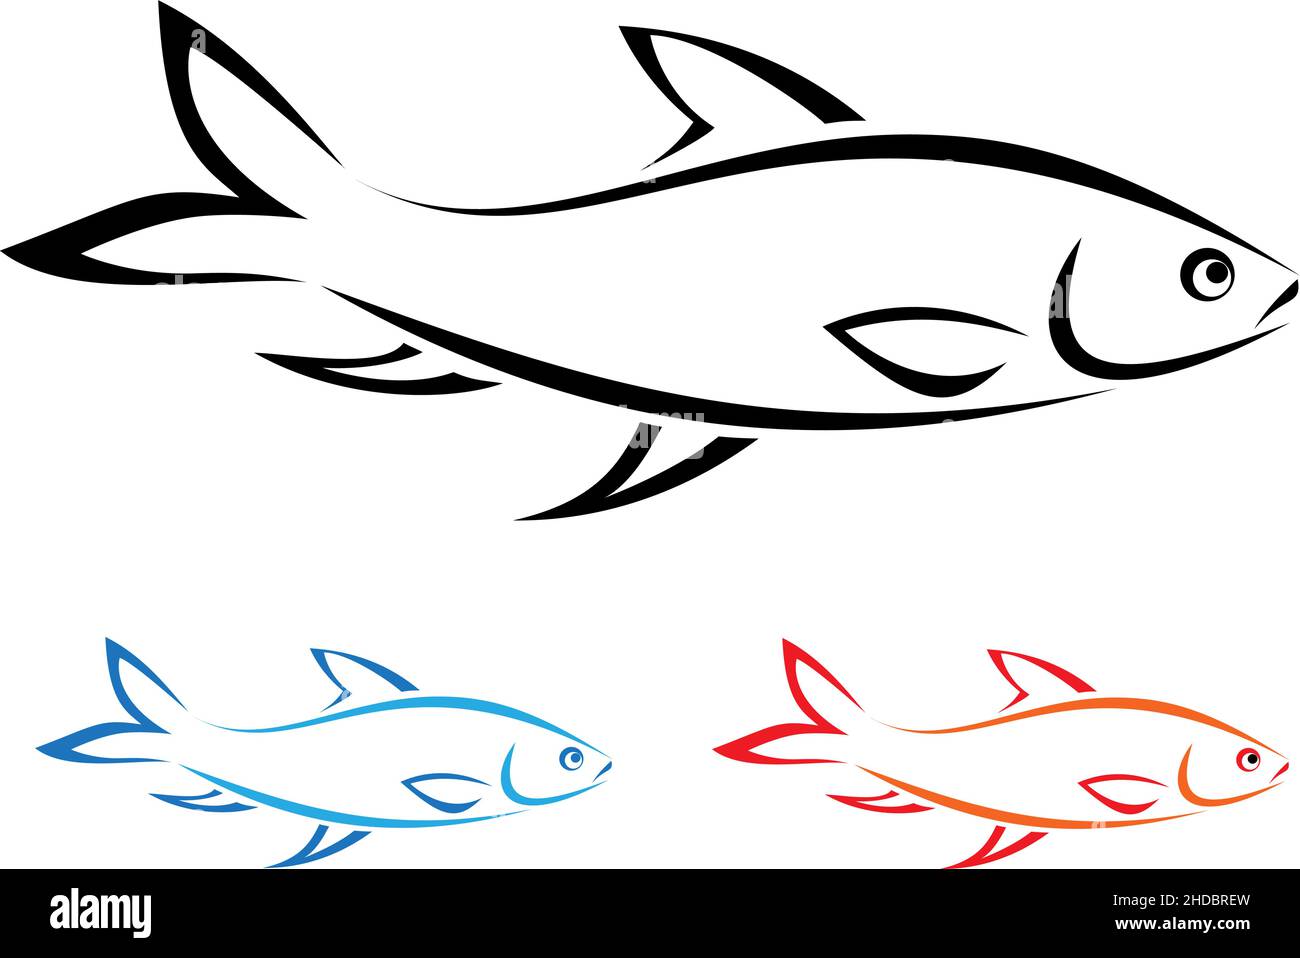 Vecteur de poisson sur fond blanc.Illustration vectorielle superposée facile à modifier. Illustration de Vecteur